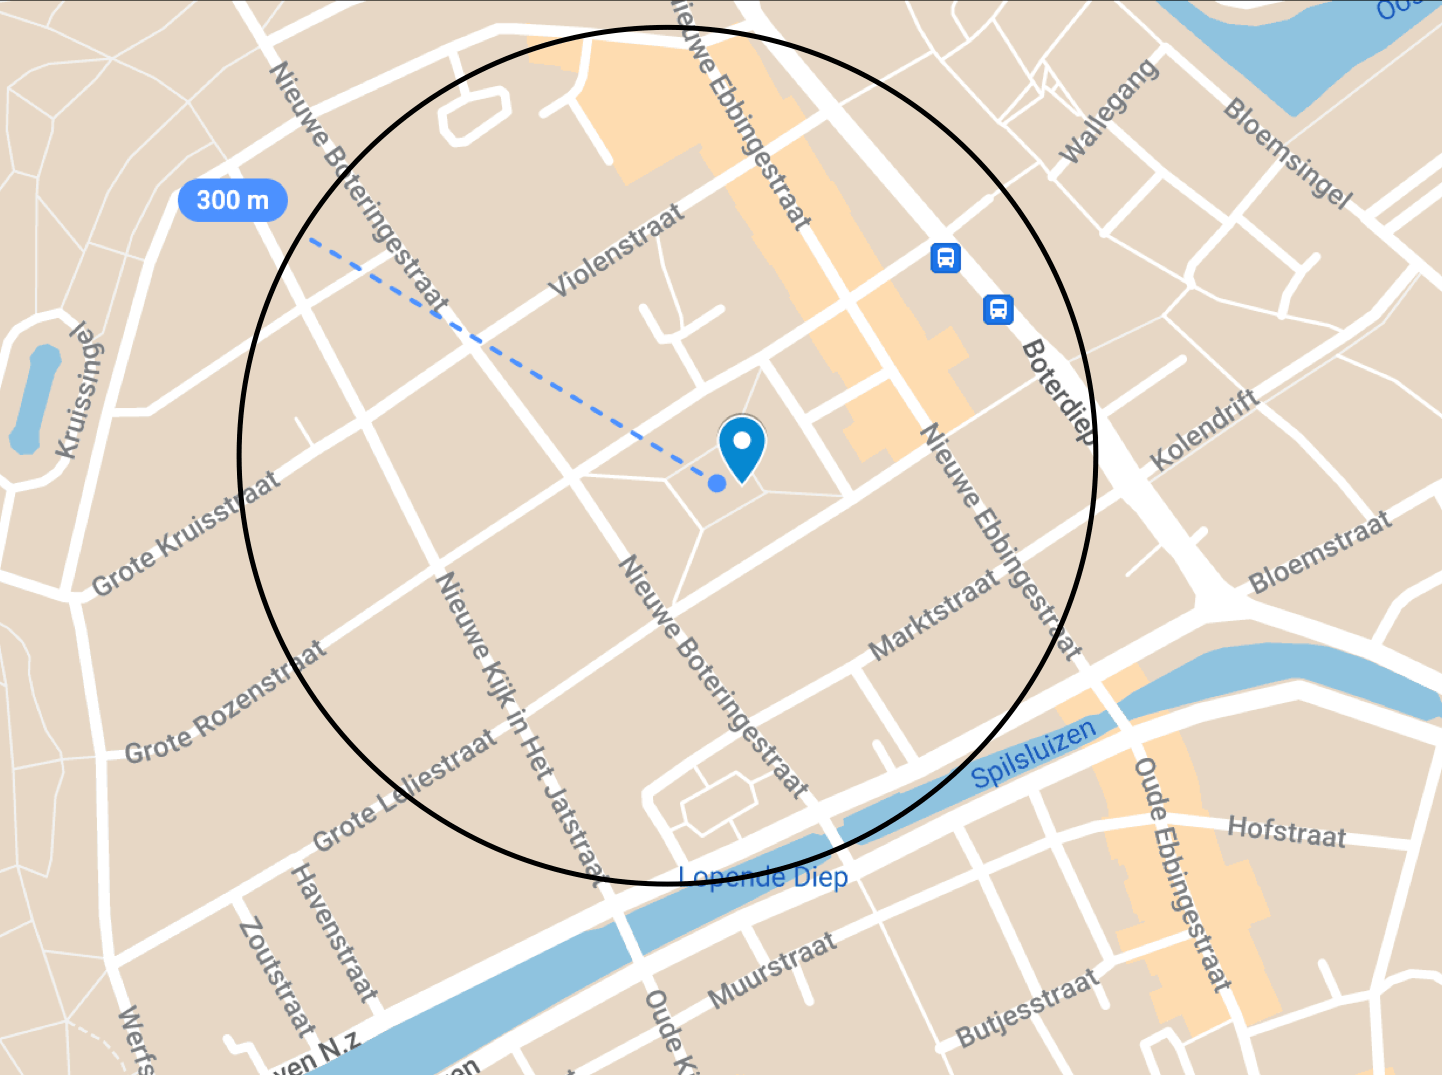 Kaart van Groningen gebruikt voor Naakte Zaterdag met cirkel met straal van 300 meter